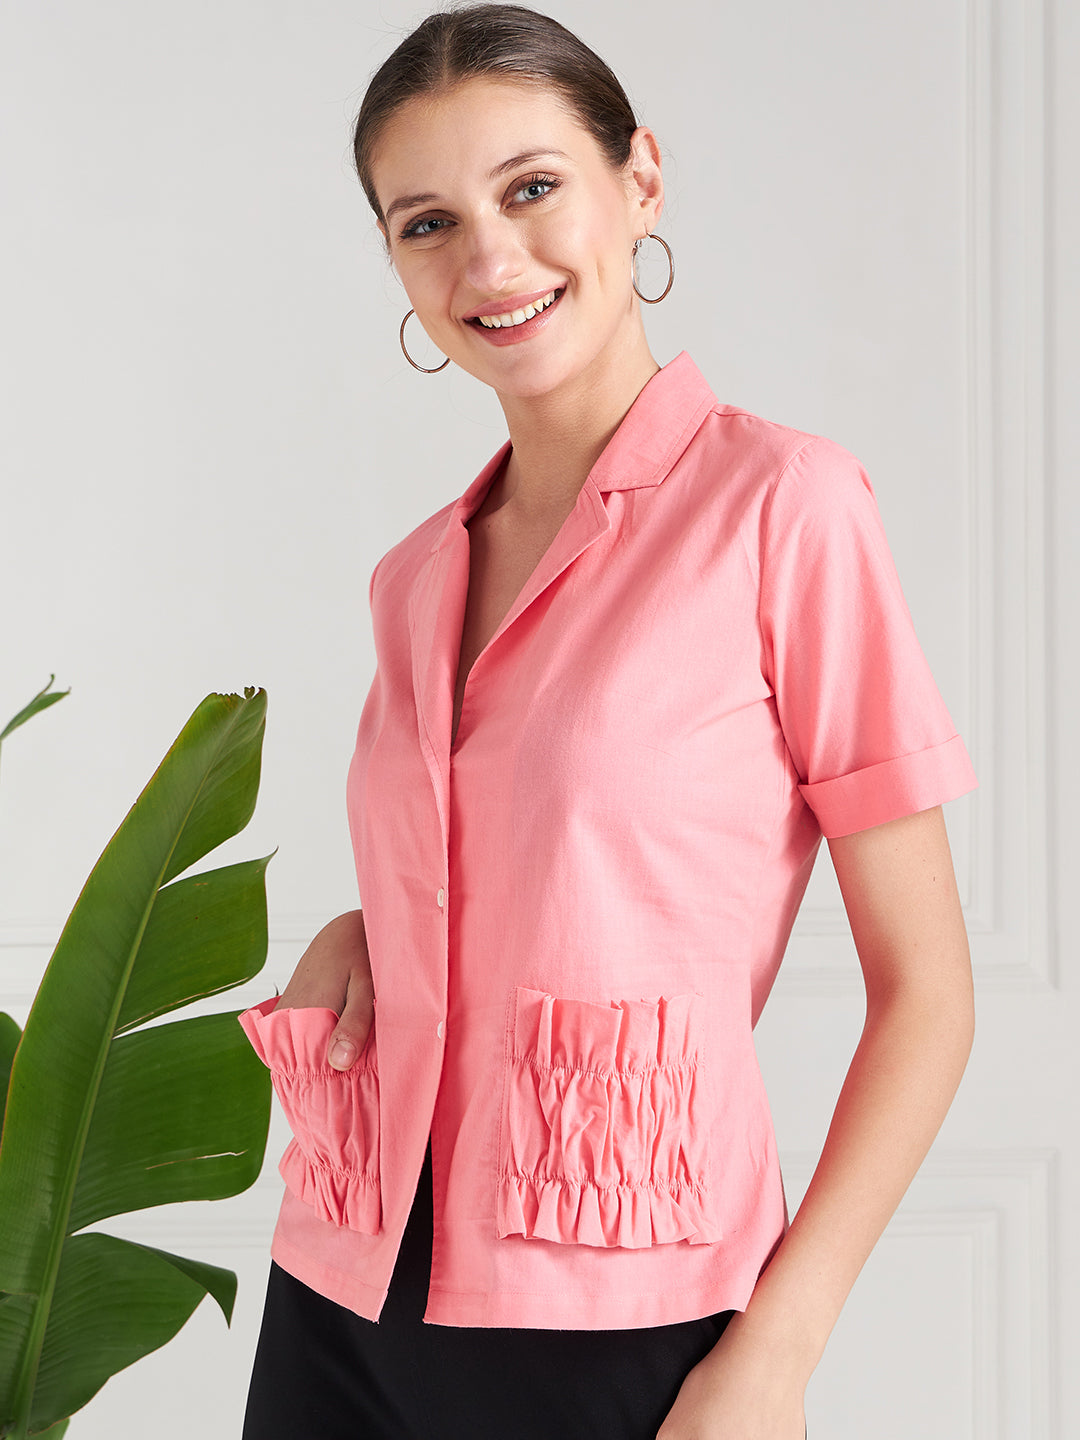 Athena Pink Lapel Collar Shirt Style Cotton Top - Athena Lifestyle